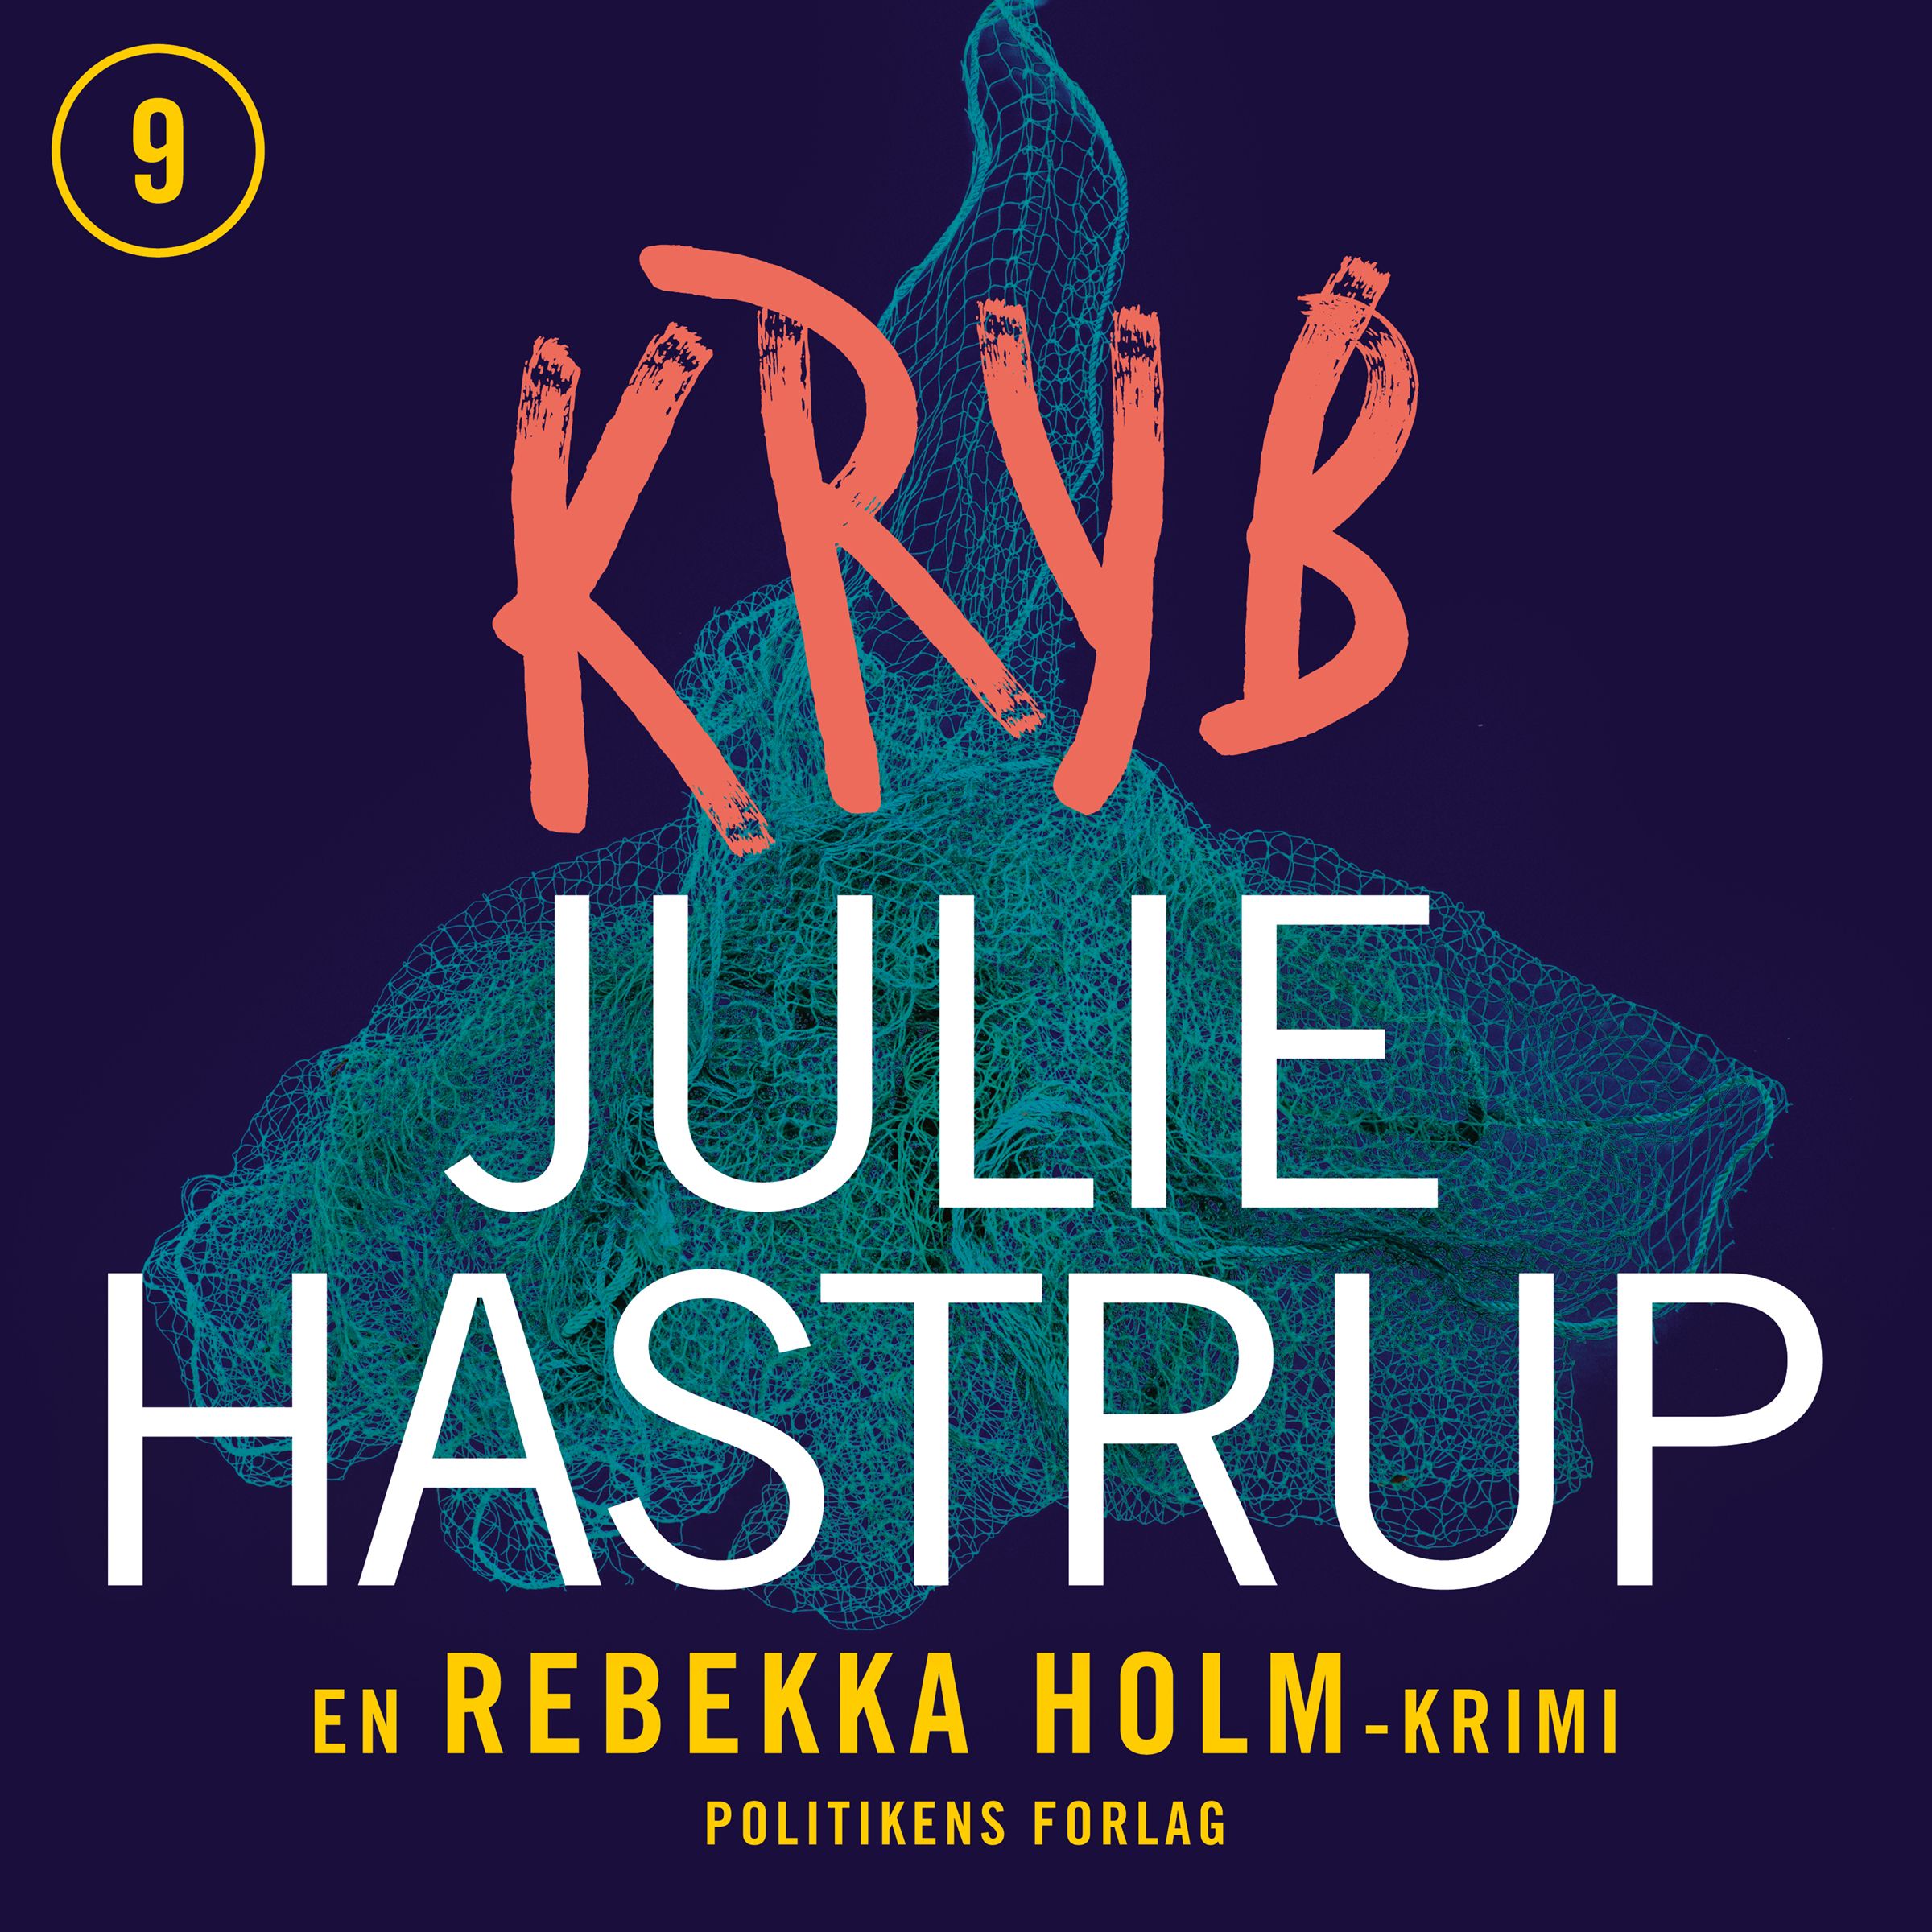 Kryb, audiobook by Julie Hastrup